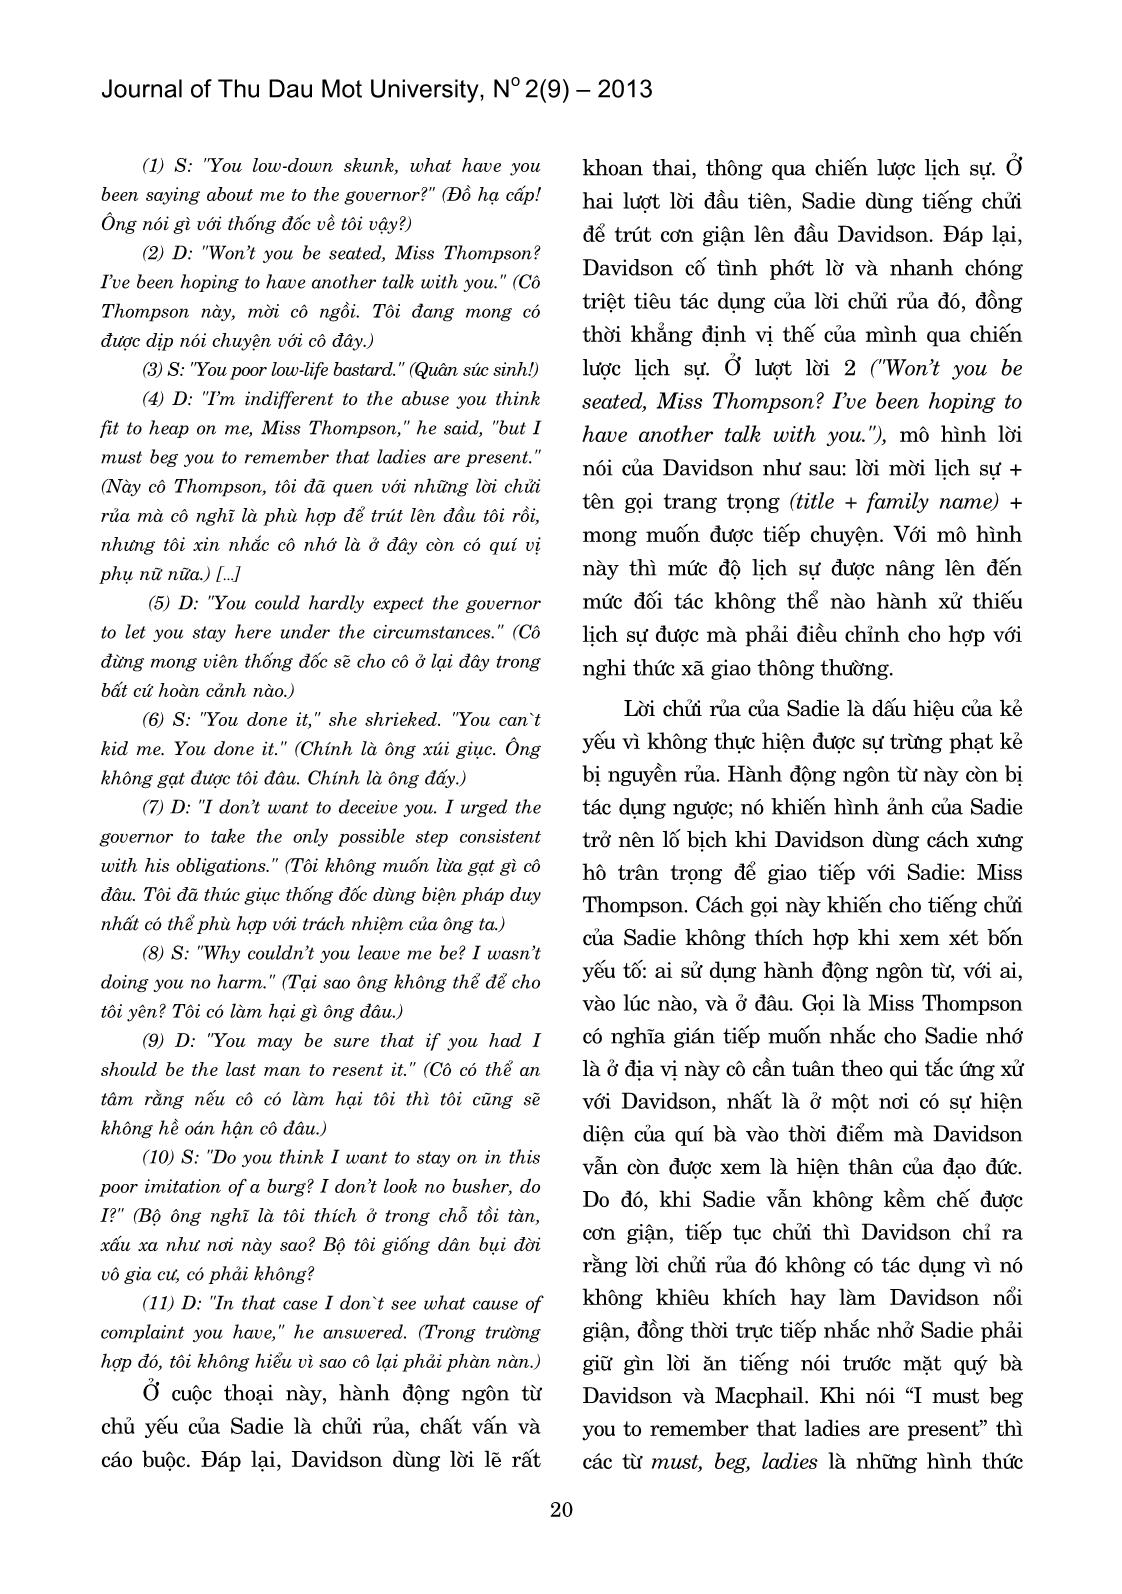 Chiến lược lịch sự qua truyện “mưa” của Somerset Maugham trang 2